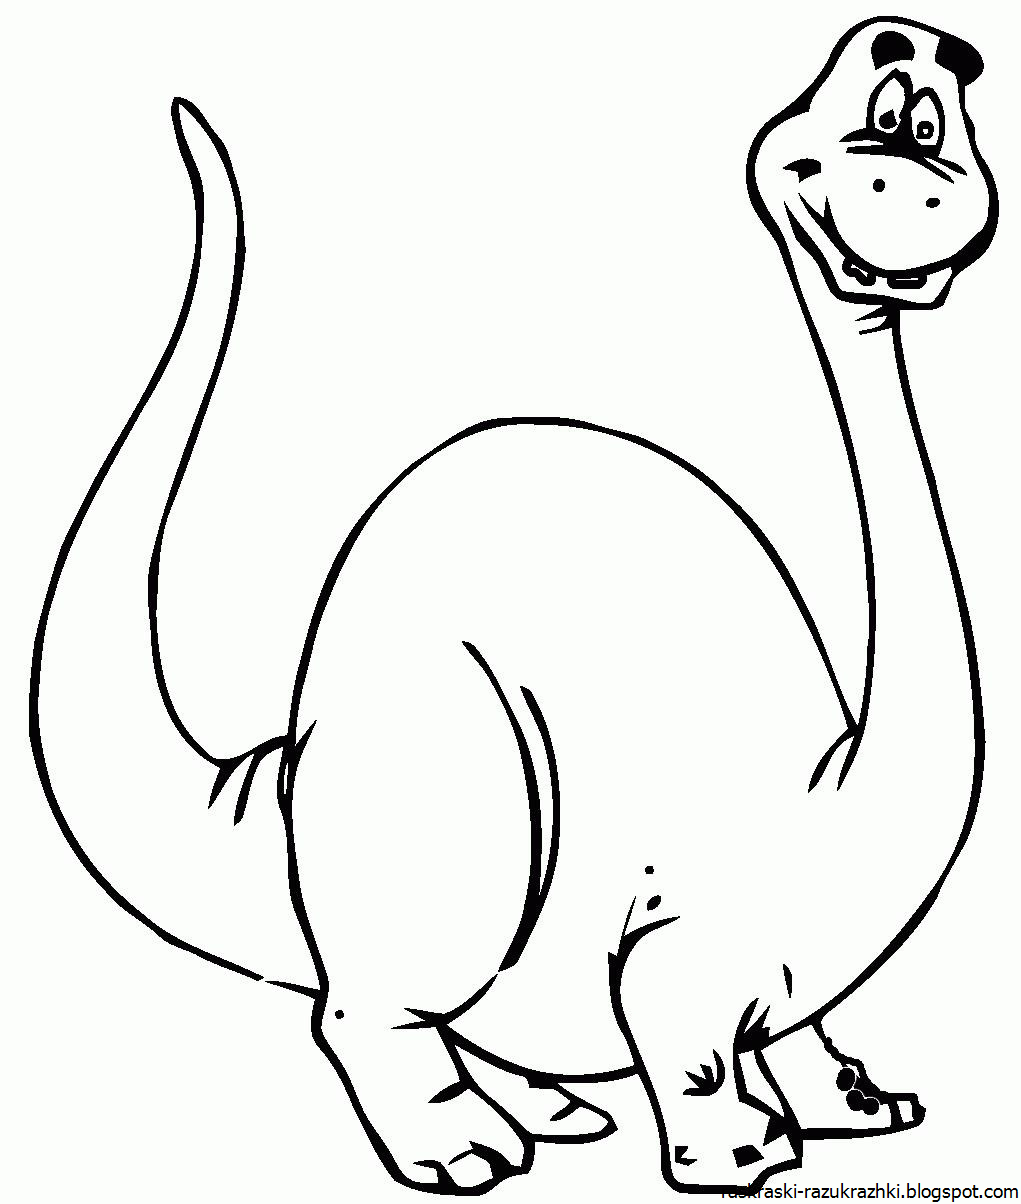 Динозавр раскраска распечатать а4. Динозавры / раскраска. Динозавр раскраска для детей. Раскраска "Динозаврики". Динозавры картинки раскраски.